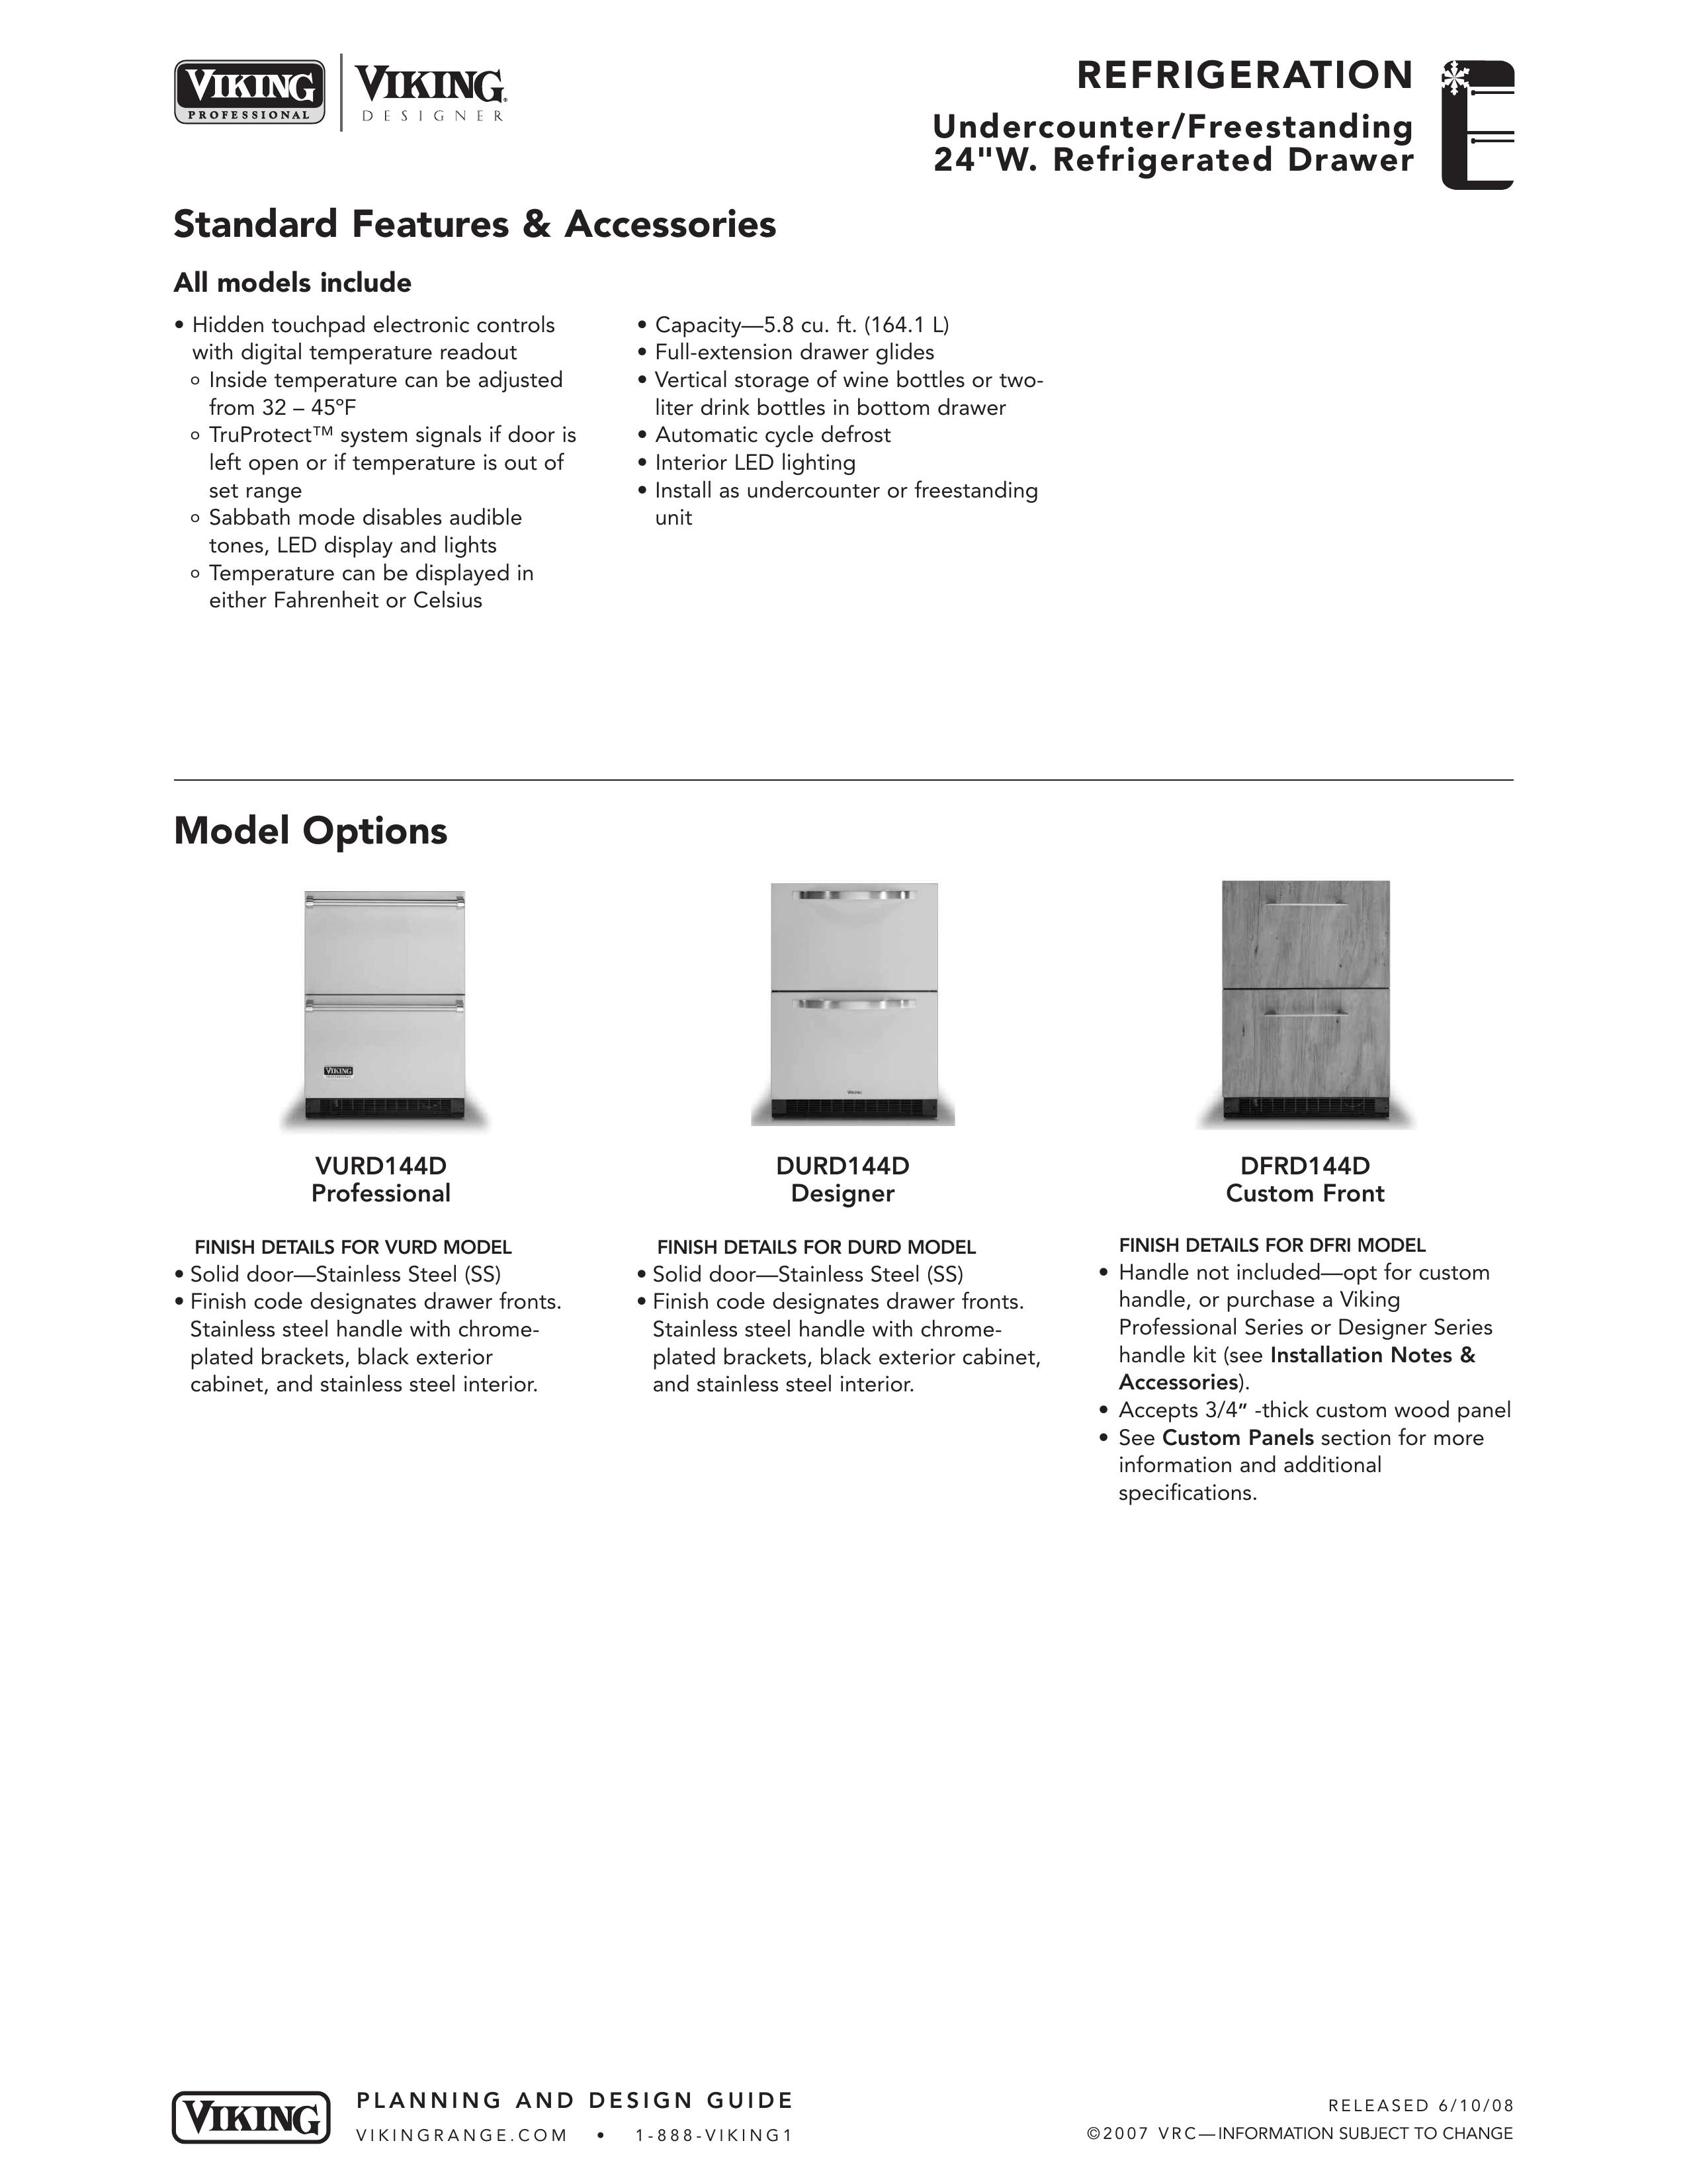 Viking DURD144D Refrigerator User Manual